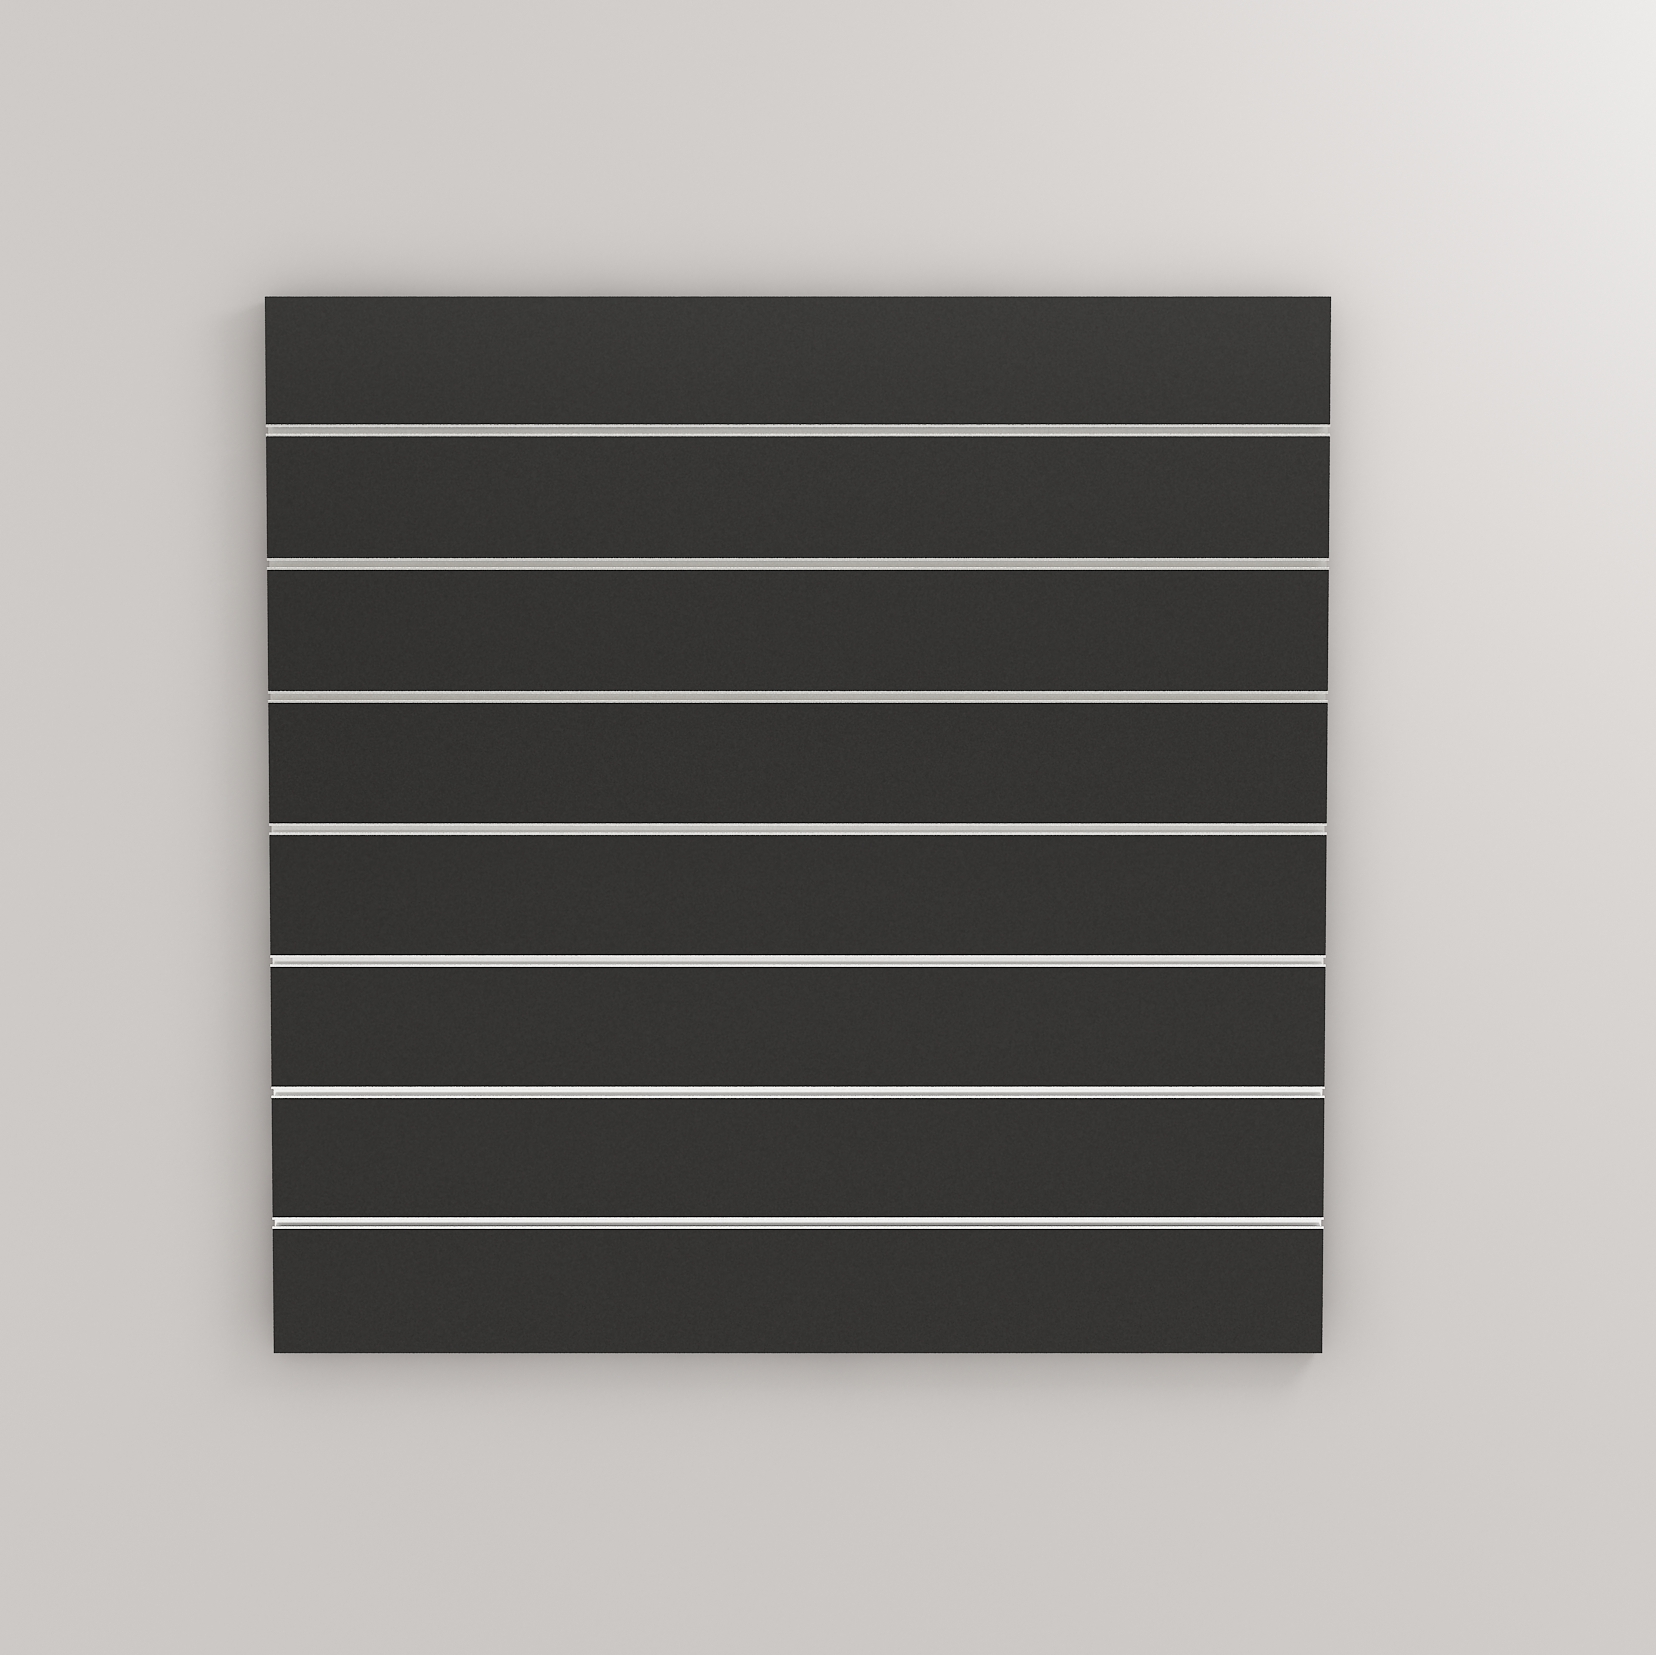 Lamellenwand "Standard" inkl. 7 Aluprofile, weiß oder schwarz matt